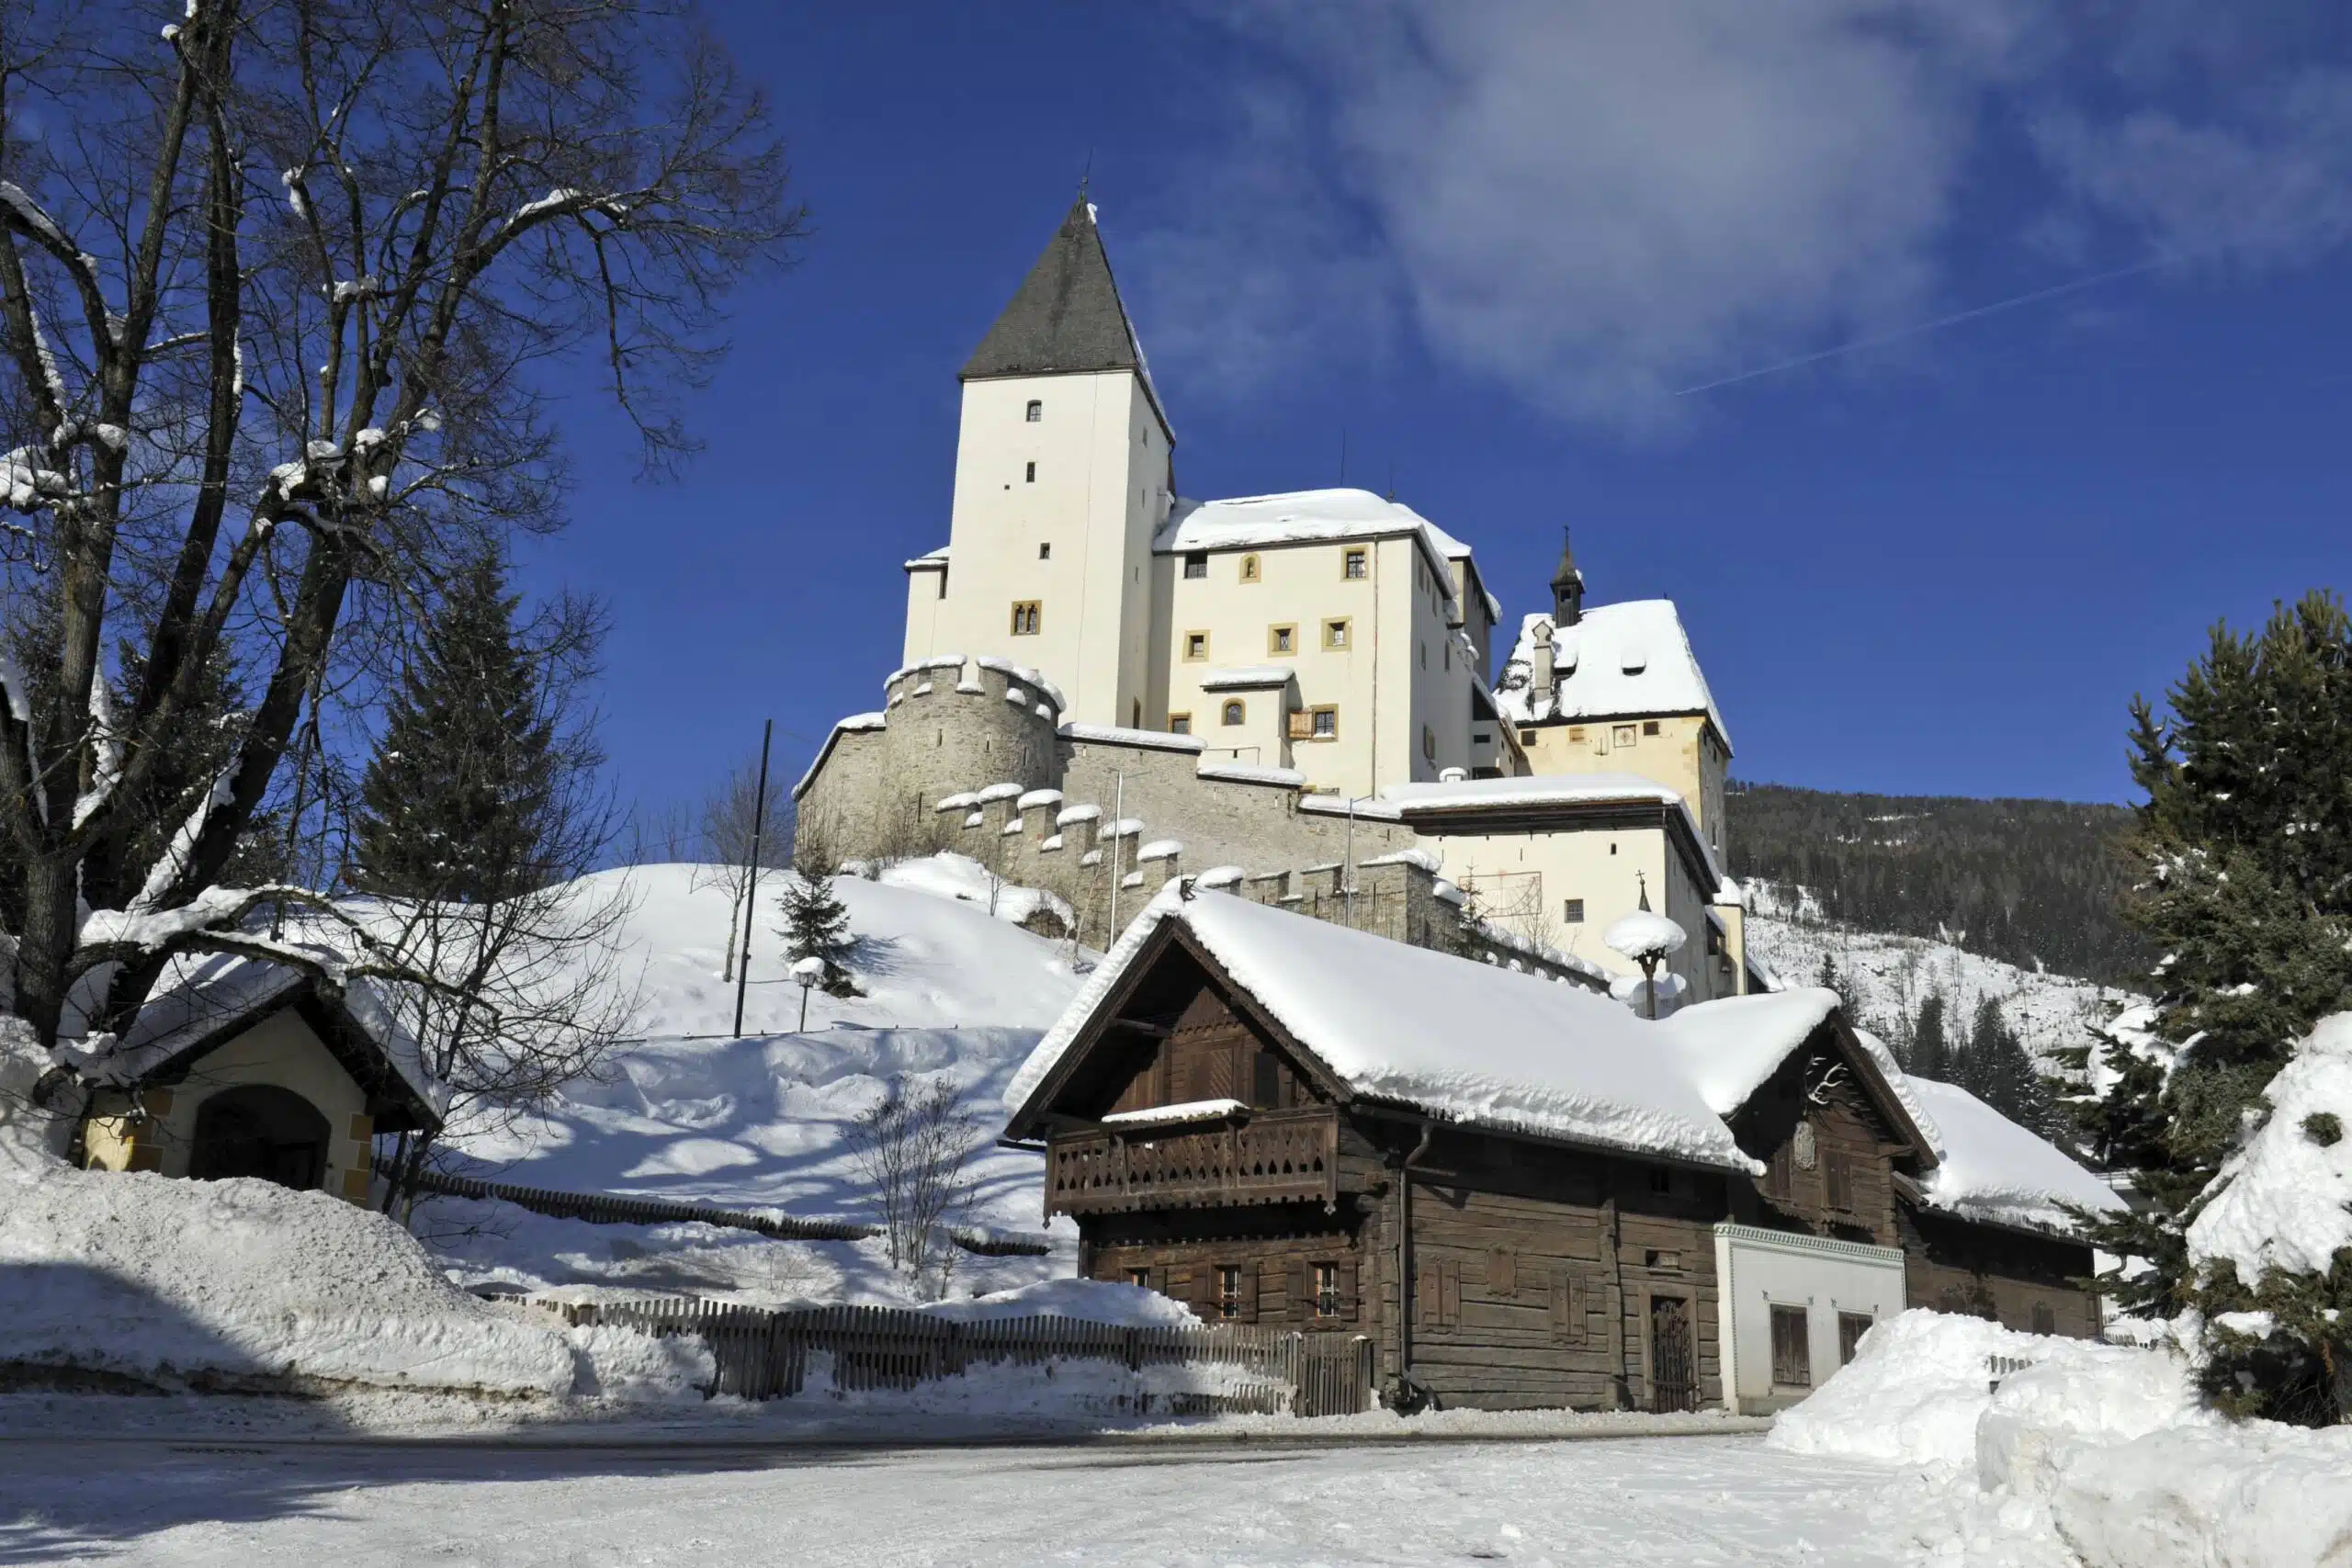 Mauterndorf im Salzburger Lungau ist ein Wintersportort mit historischem Flair und gemütlicher Familienfreundlichkeit.